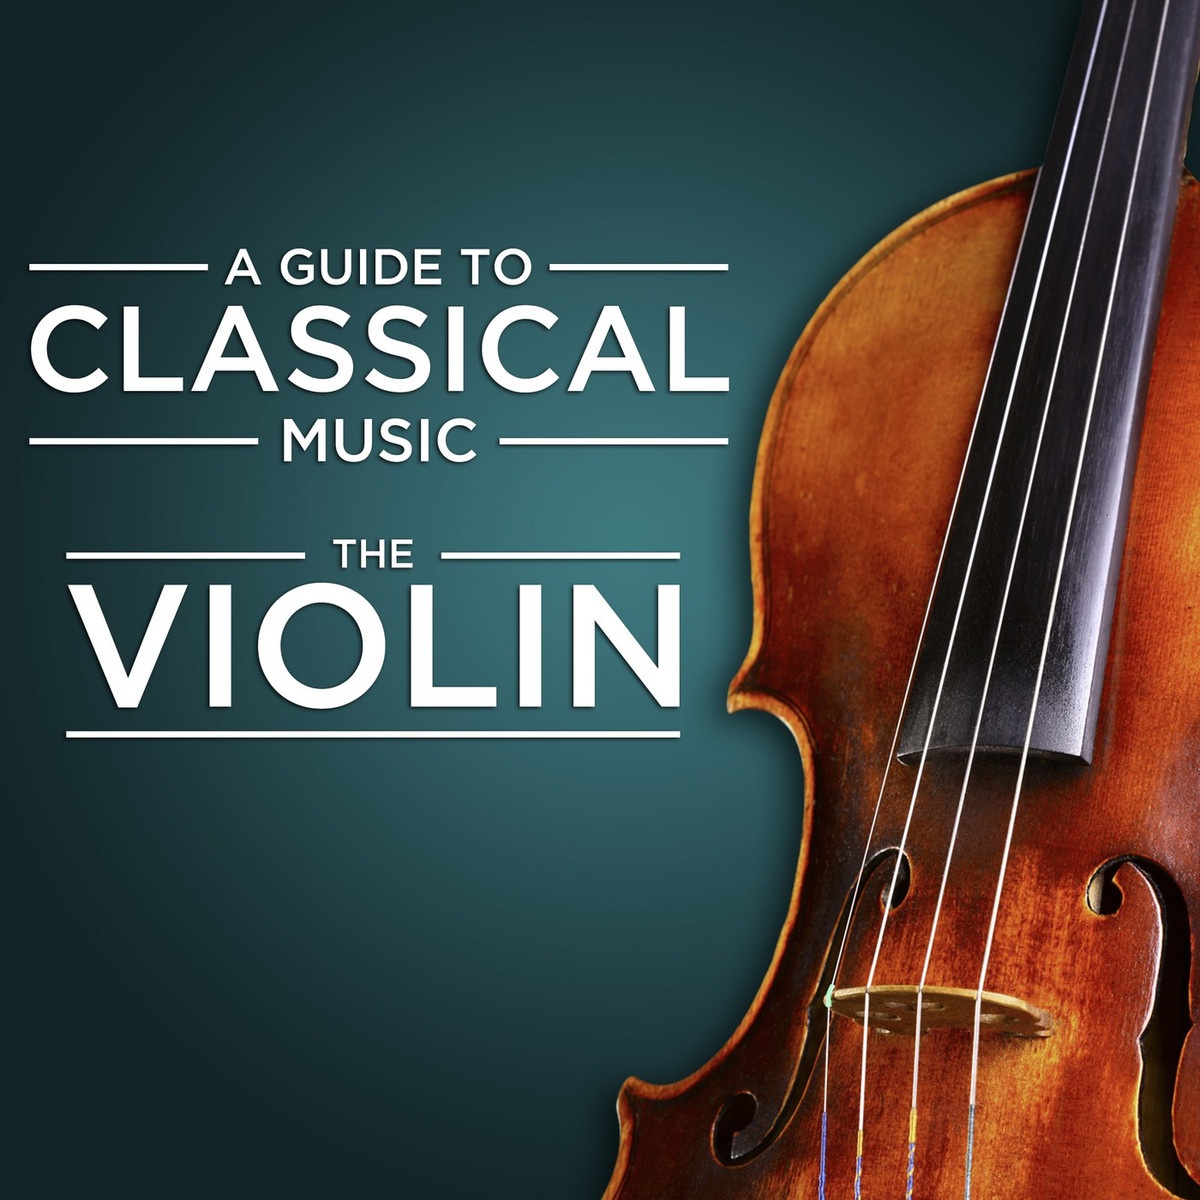 Sonata in A Major for Violin and Piano, M. 8:II. Allegro - Quasi lento - Tempo primo